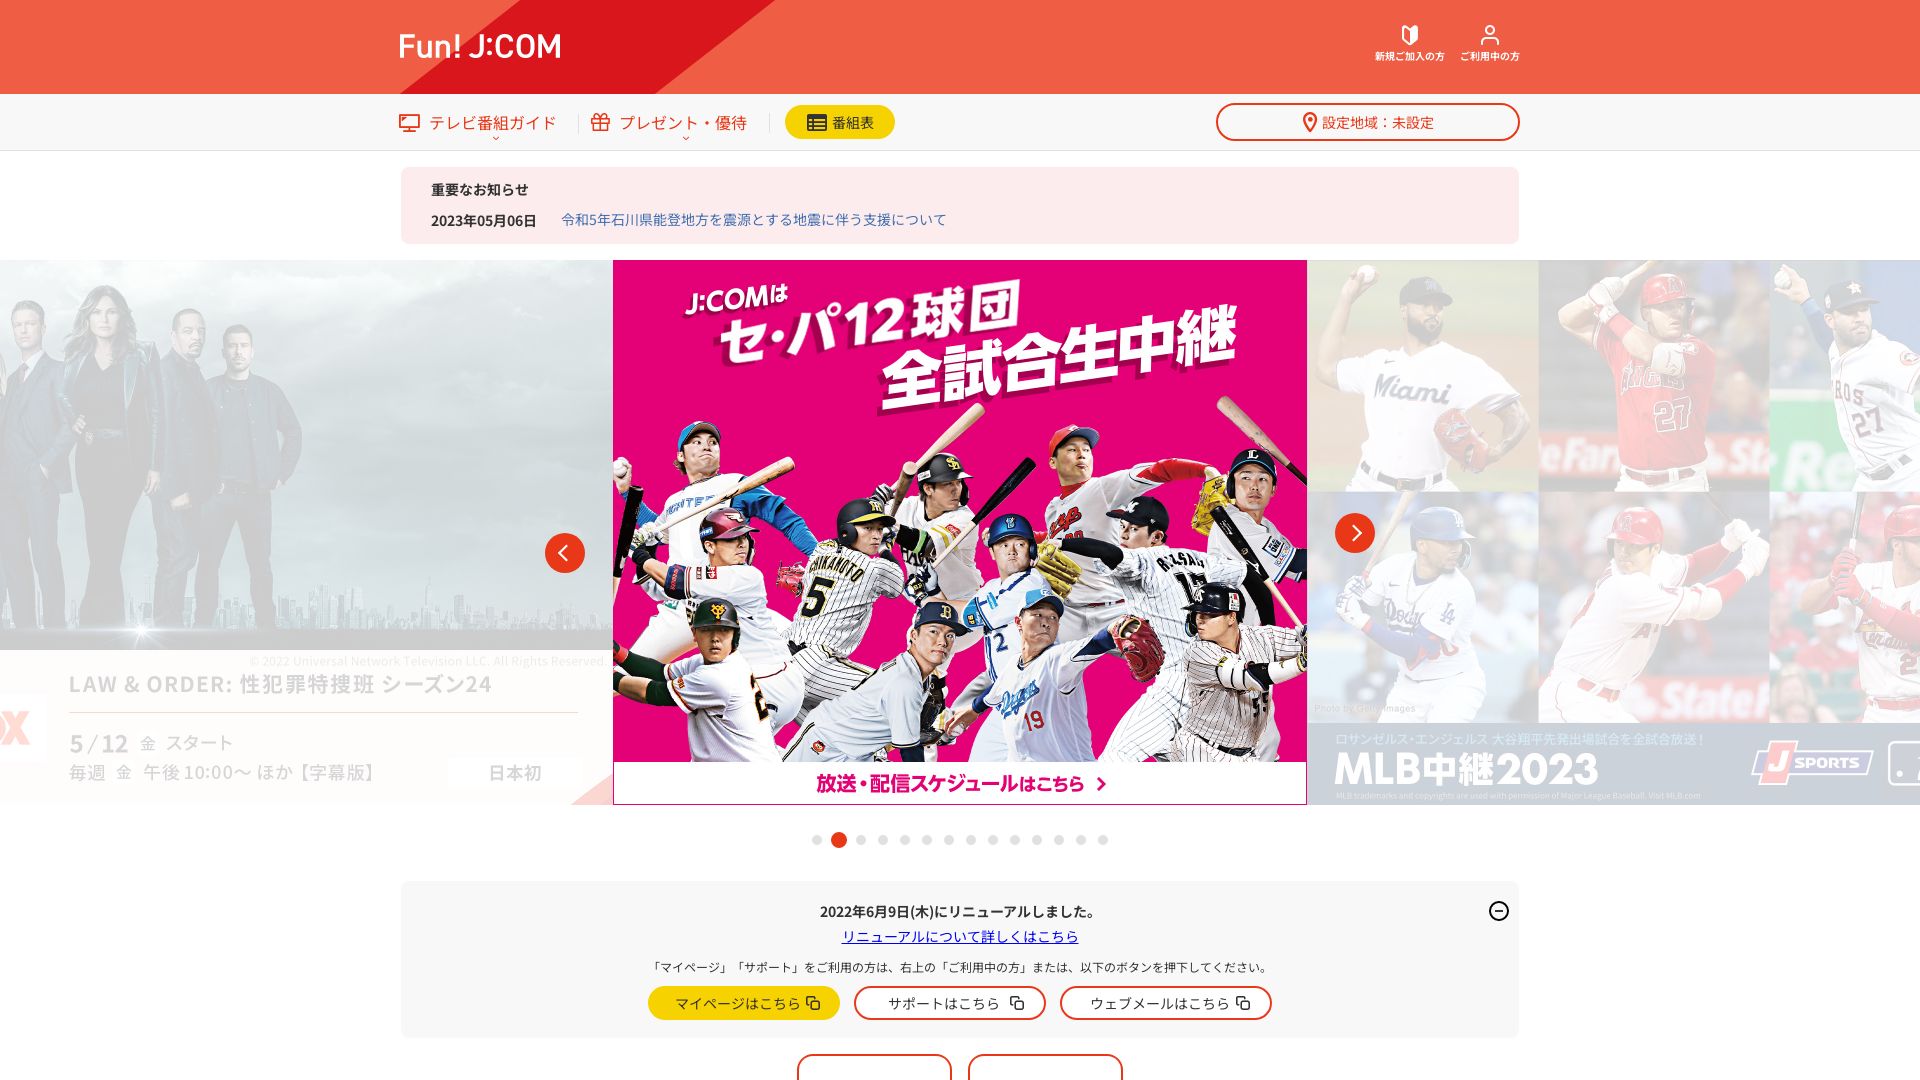 Website status myjcom.jp is   ONLINE